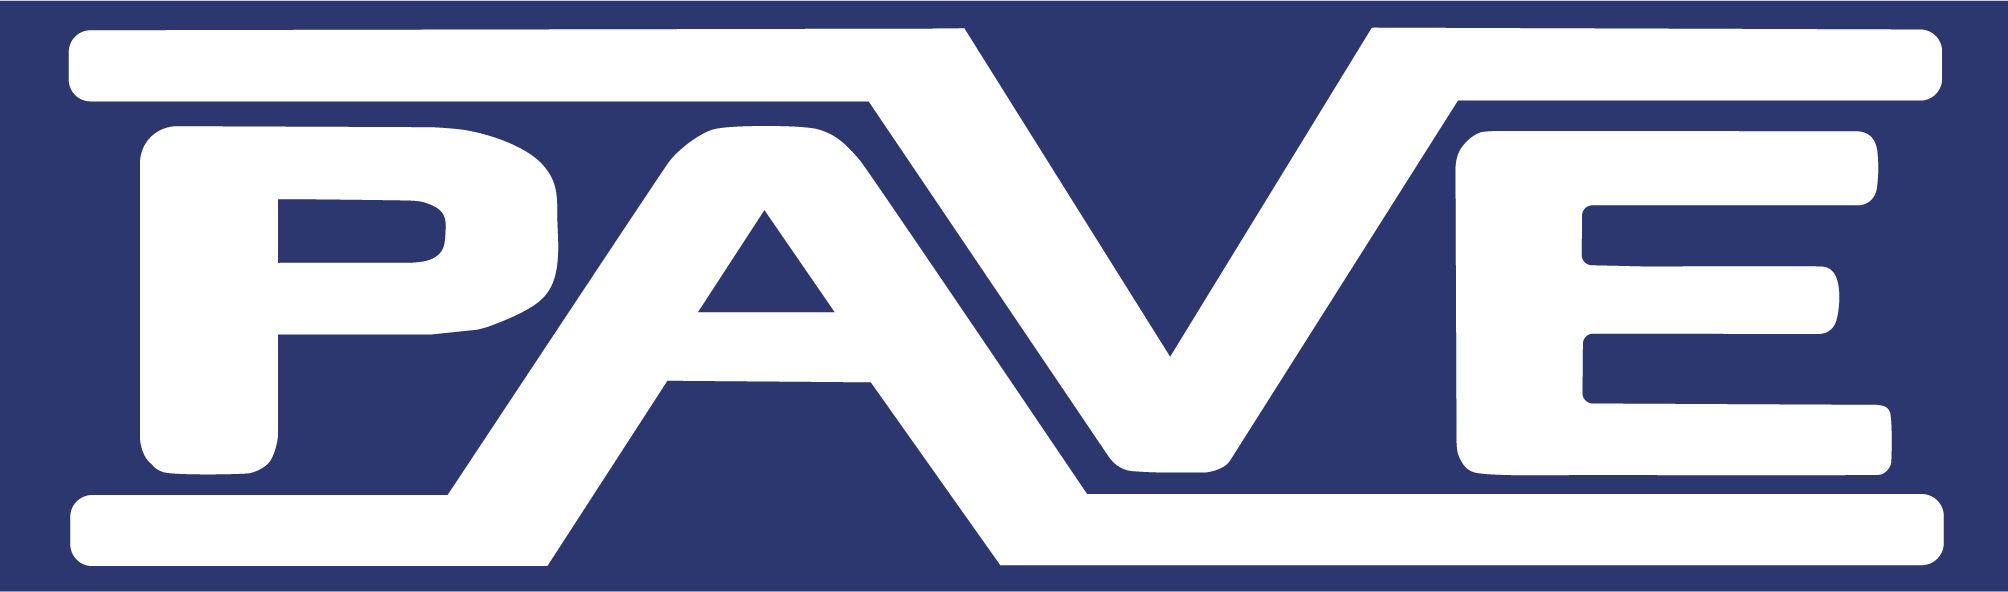 Pave System Pte Ltd logo